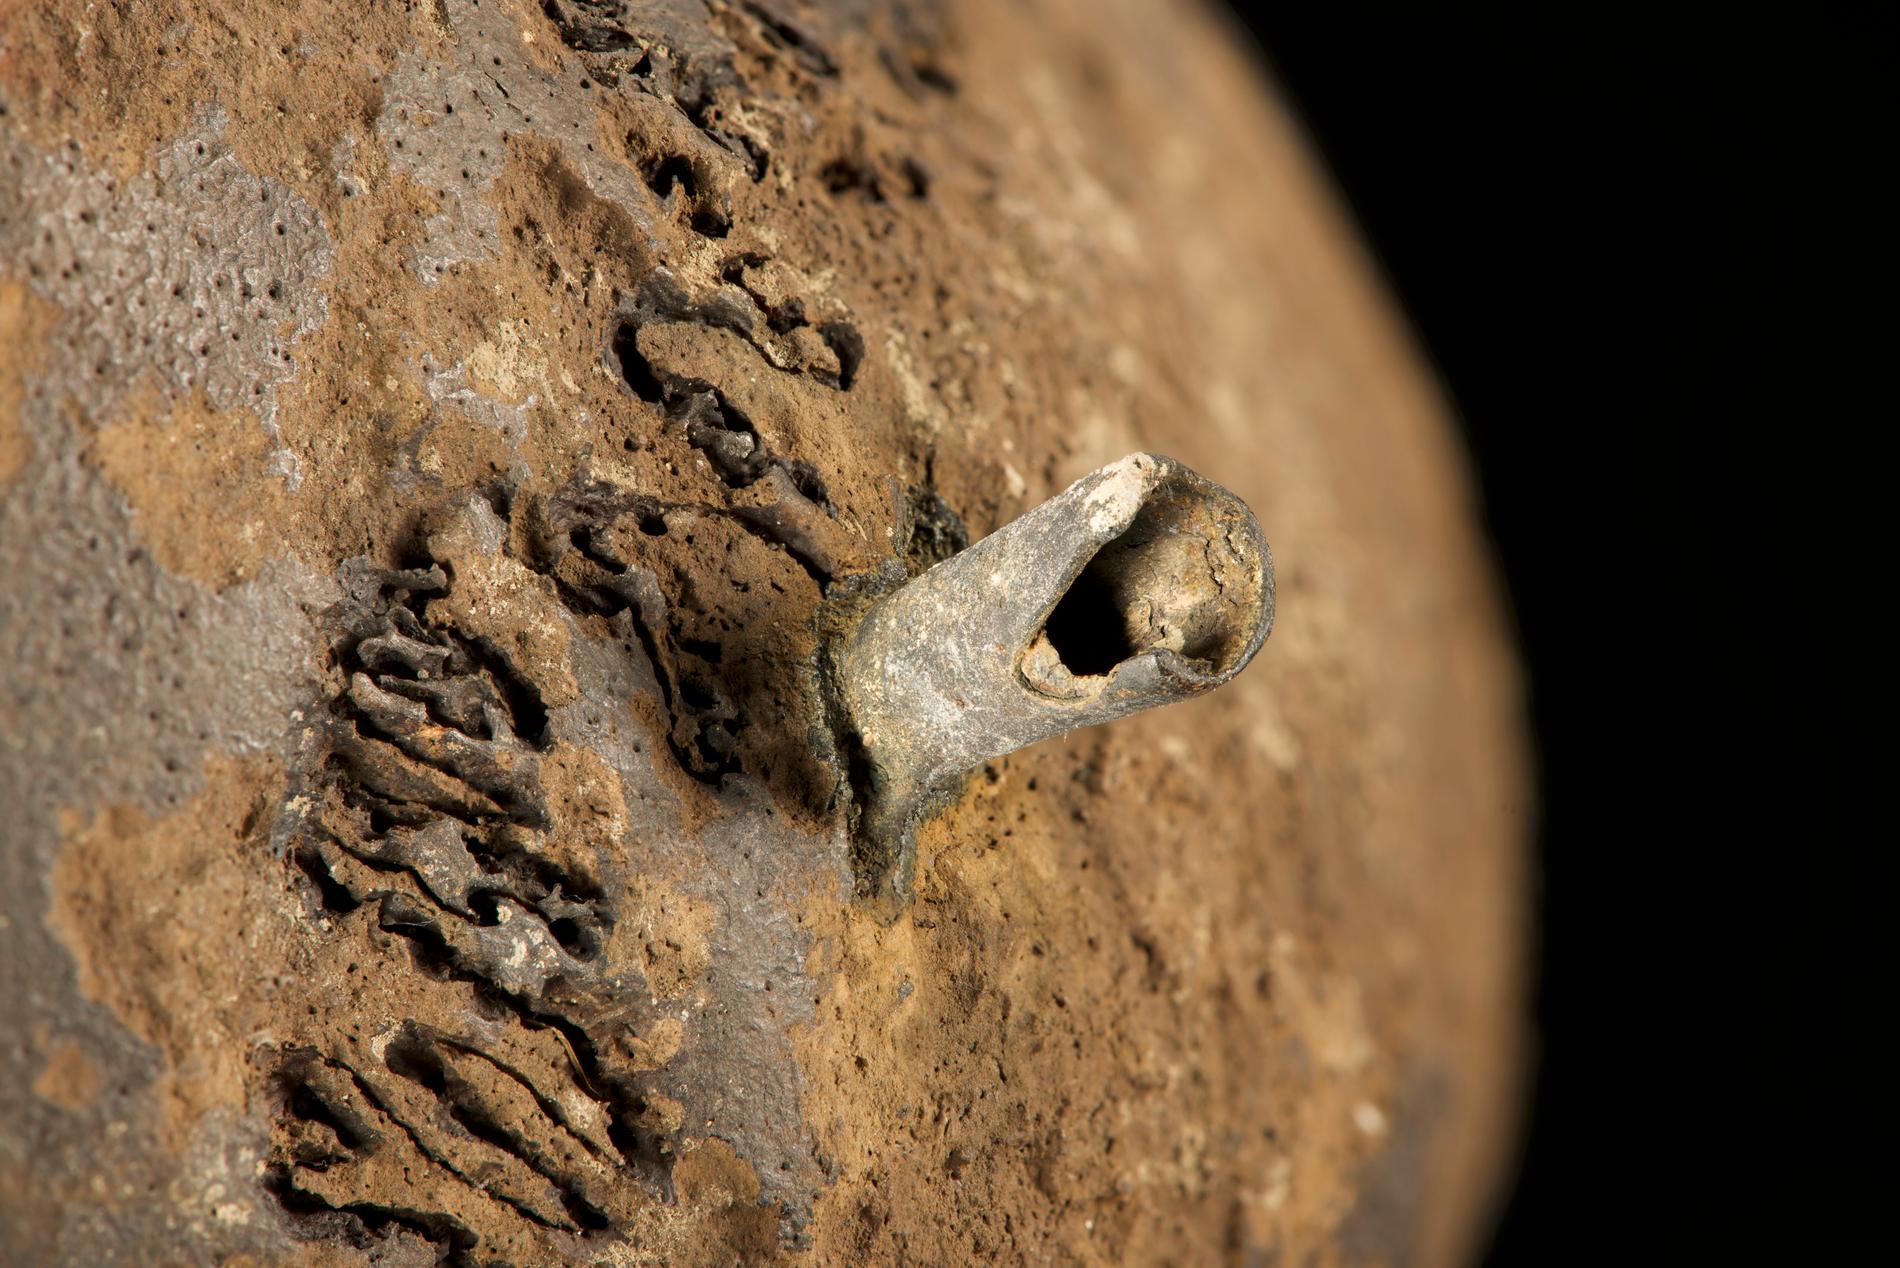 Flera av skallarna visar tecken på dödligt våld. På den här har en bronspil genomborrat skallbenet. Många av pilspetsarna hade några millimeter av själva pilen kvar, något som hjälpte forskarna att datera slaget till cirka 1280 före vår tideräkning.